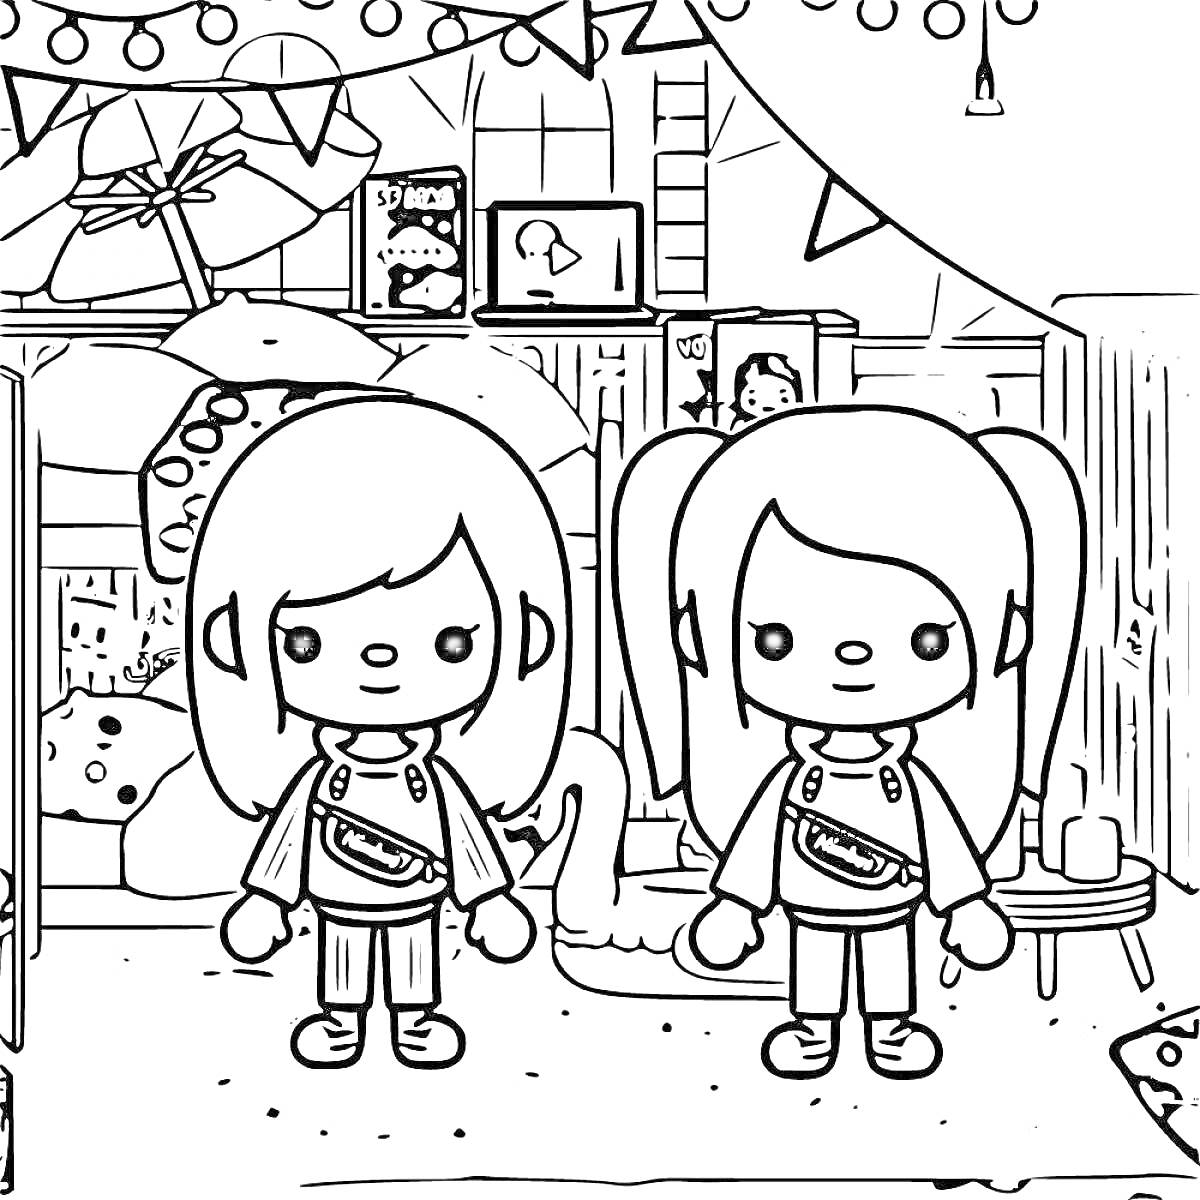 Две девочки в комнате с гирляндами, шкафом, игрушками, книгами и праздничным декором